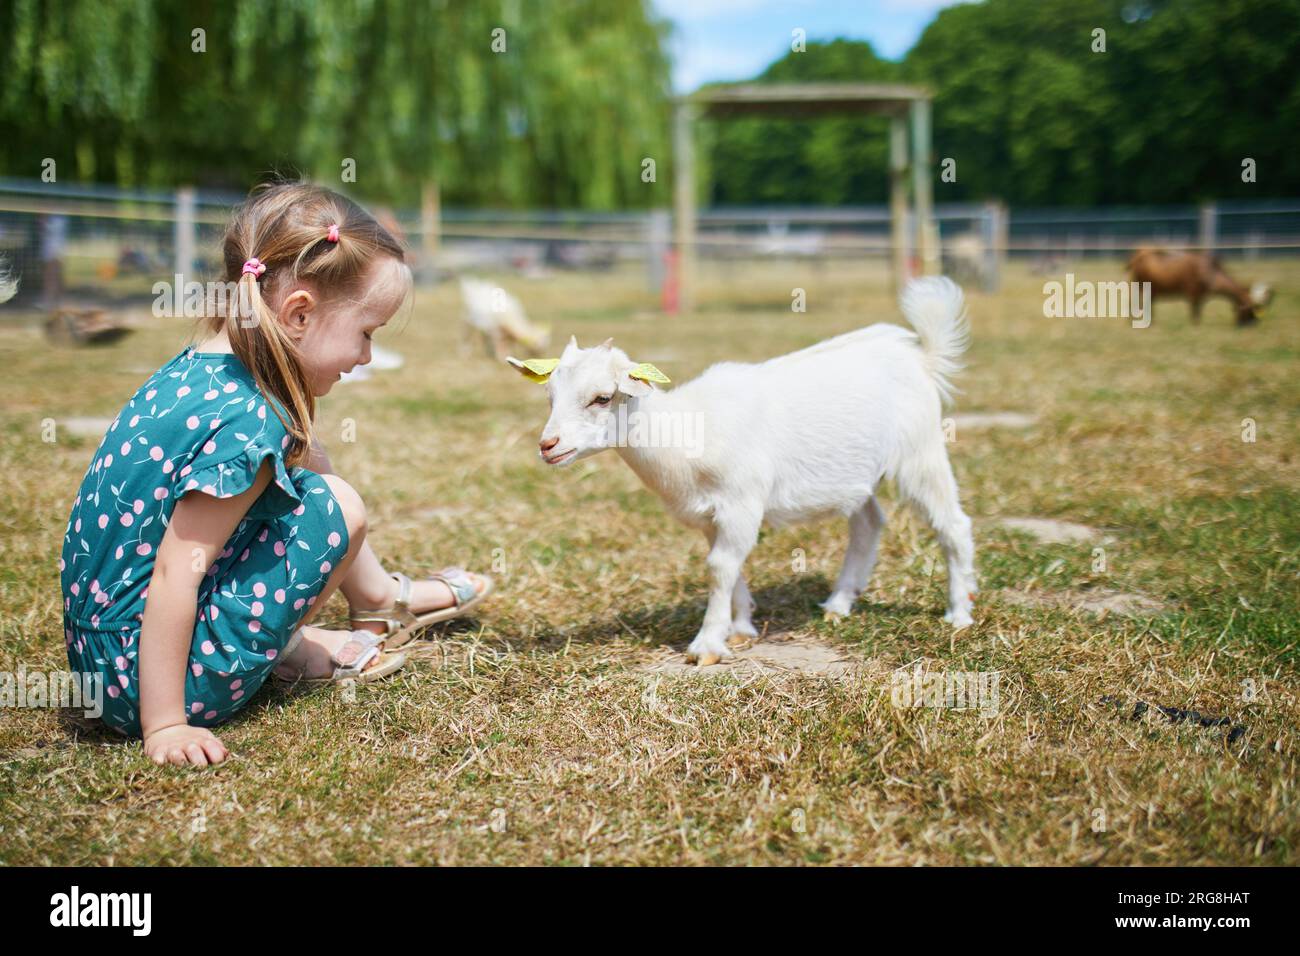 Adorabile bambina in età prescolare che gioca con l'agnello in fattoria. Bambino che si familiarizza con gli animali. Agricoltura e giardinaggio per bambini piccoli. Estate all'aperto Foto Stock